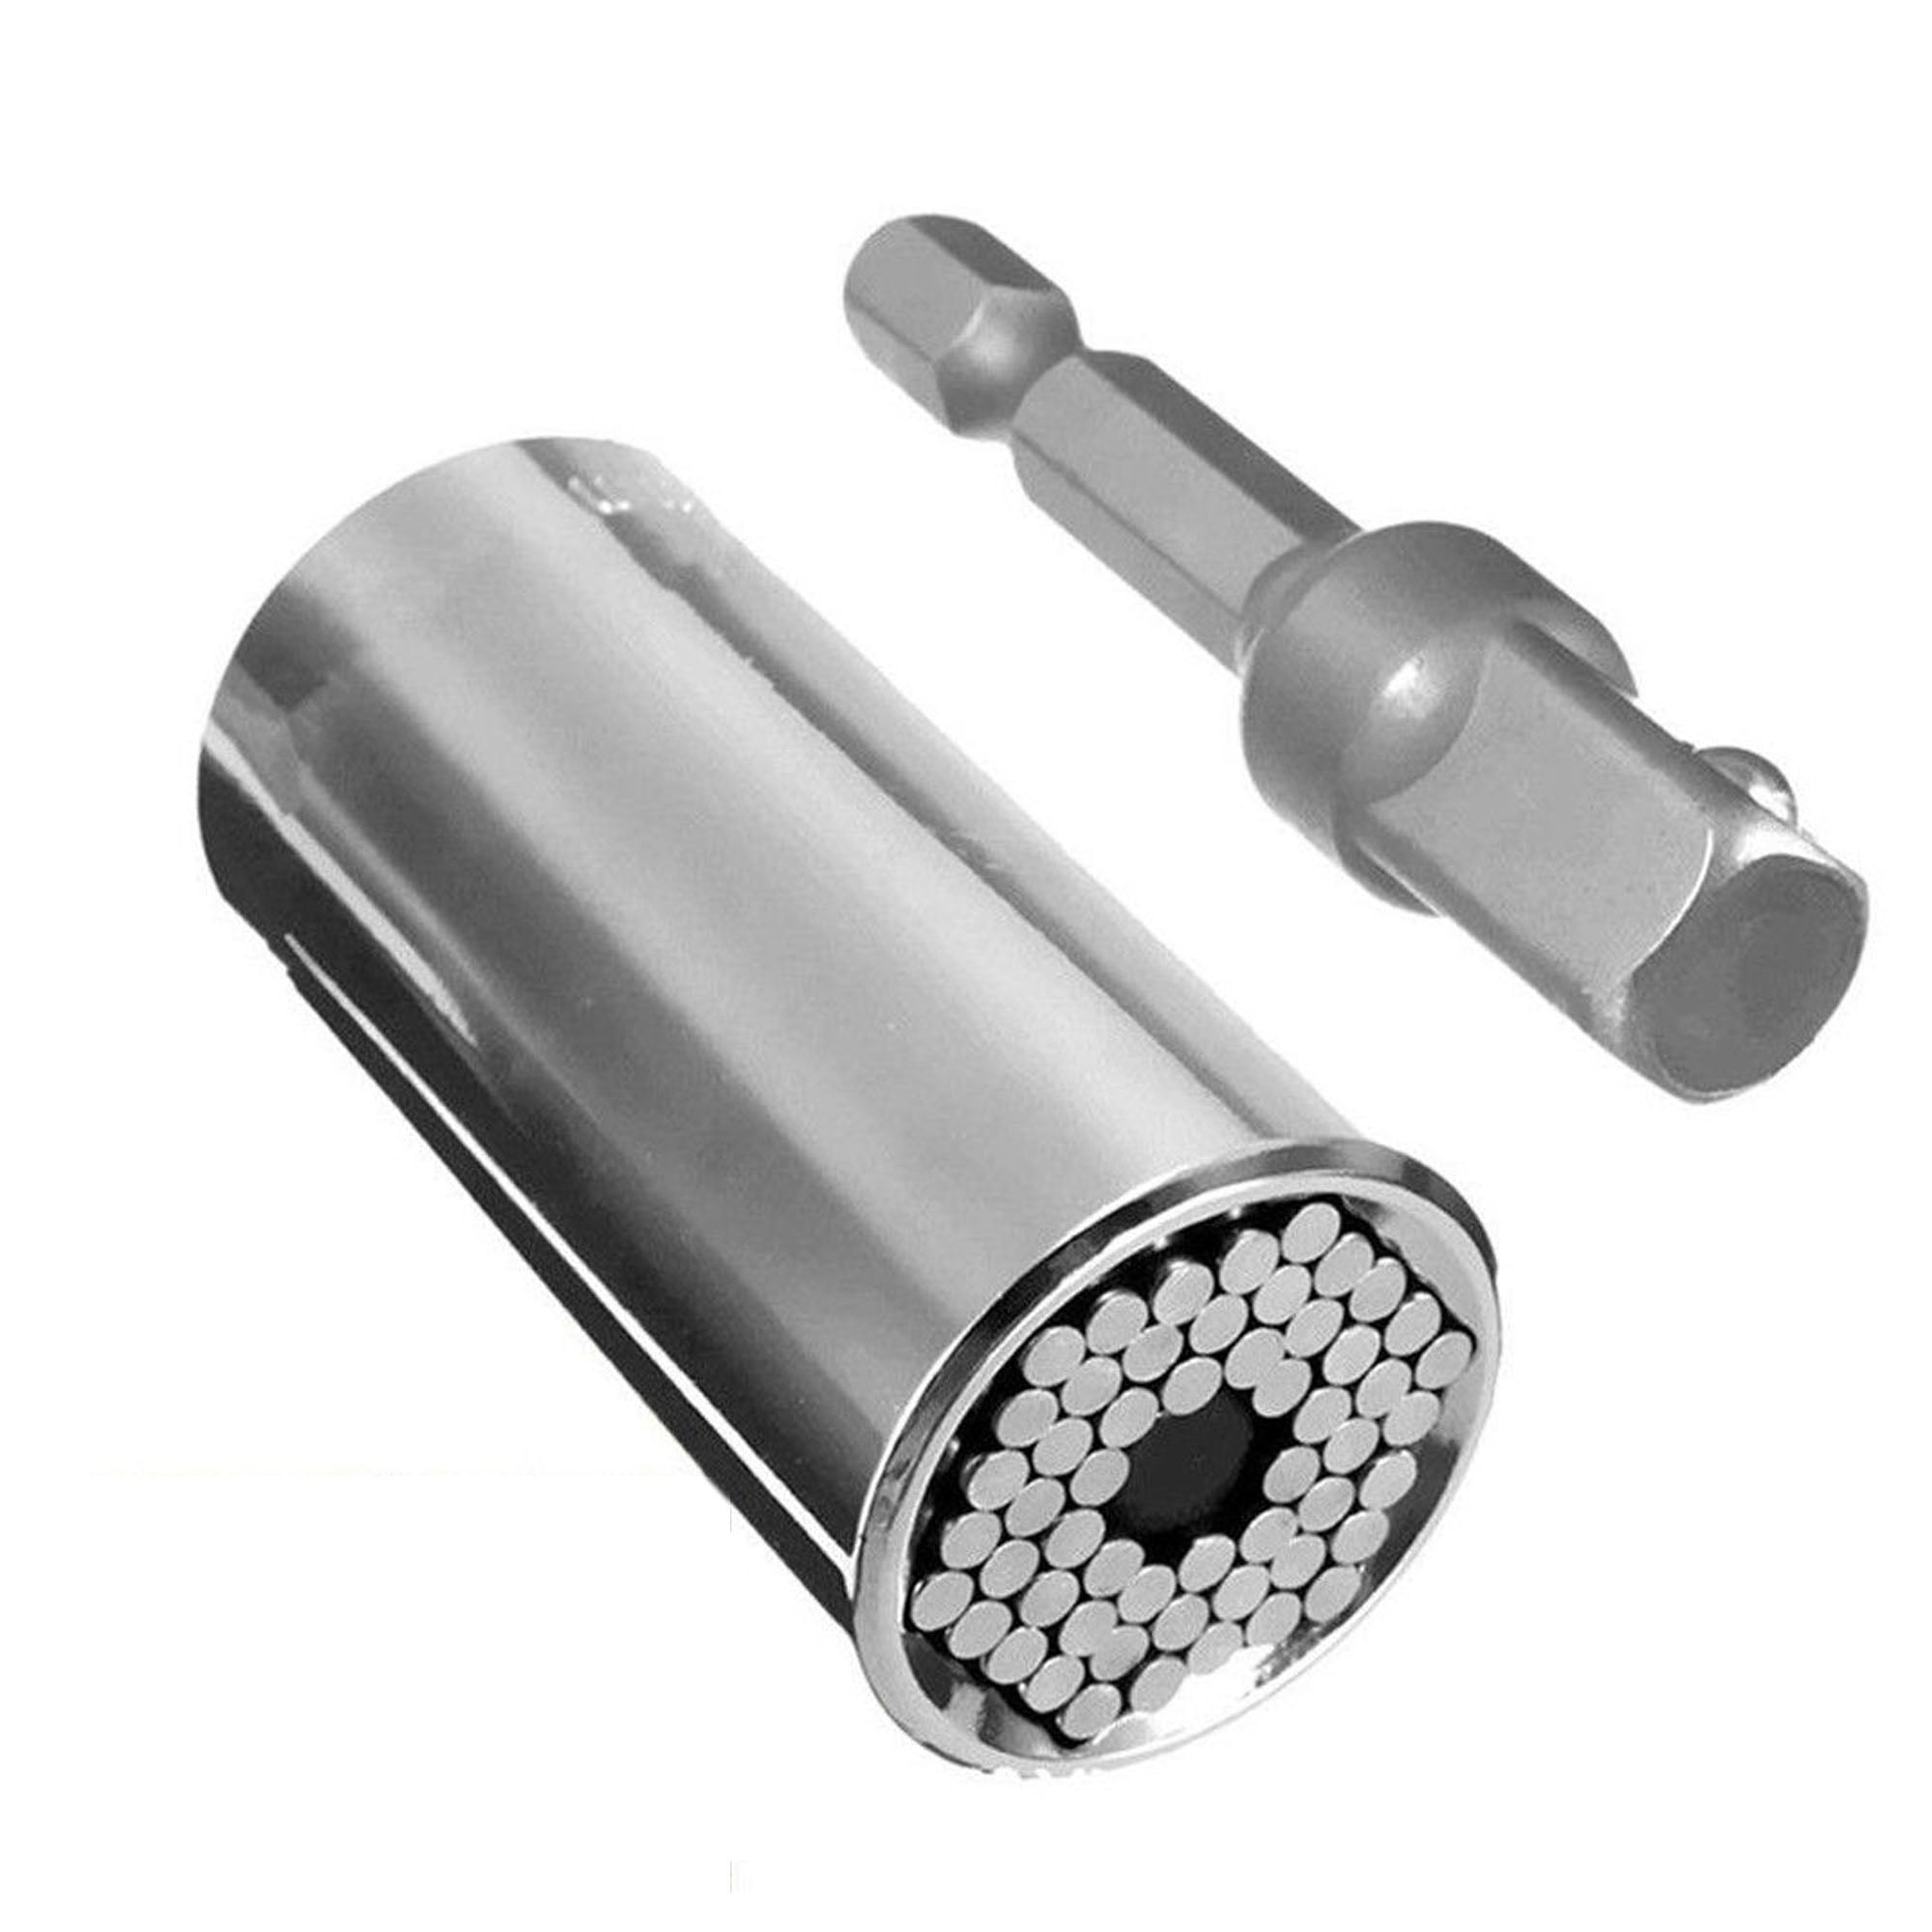 7-19mm Universal Steckschlüssel-Schraubenschlüssel Gator Grip Power Drill Adapte 